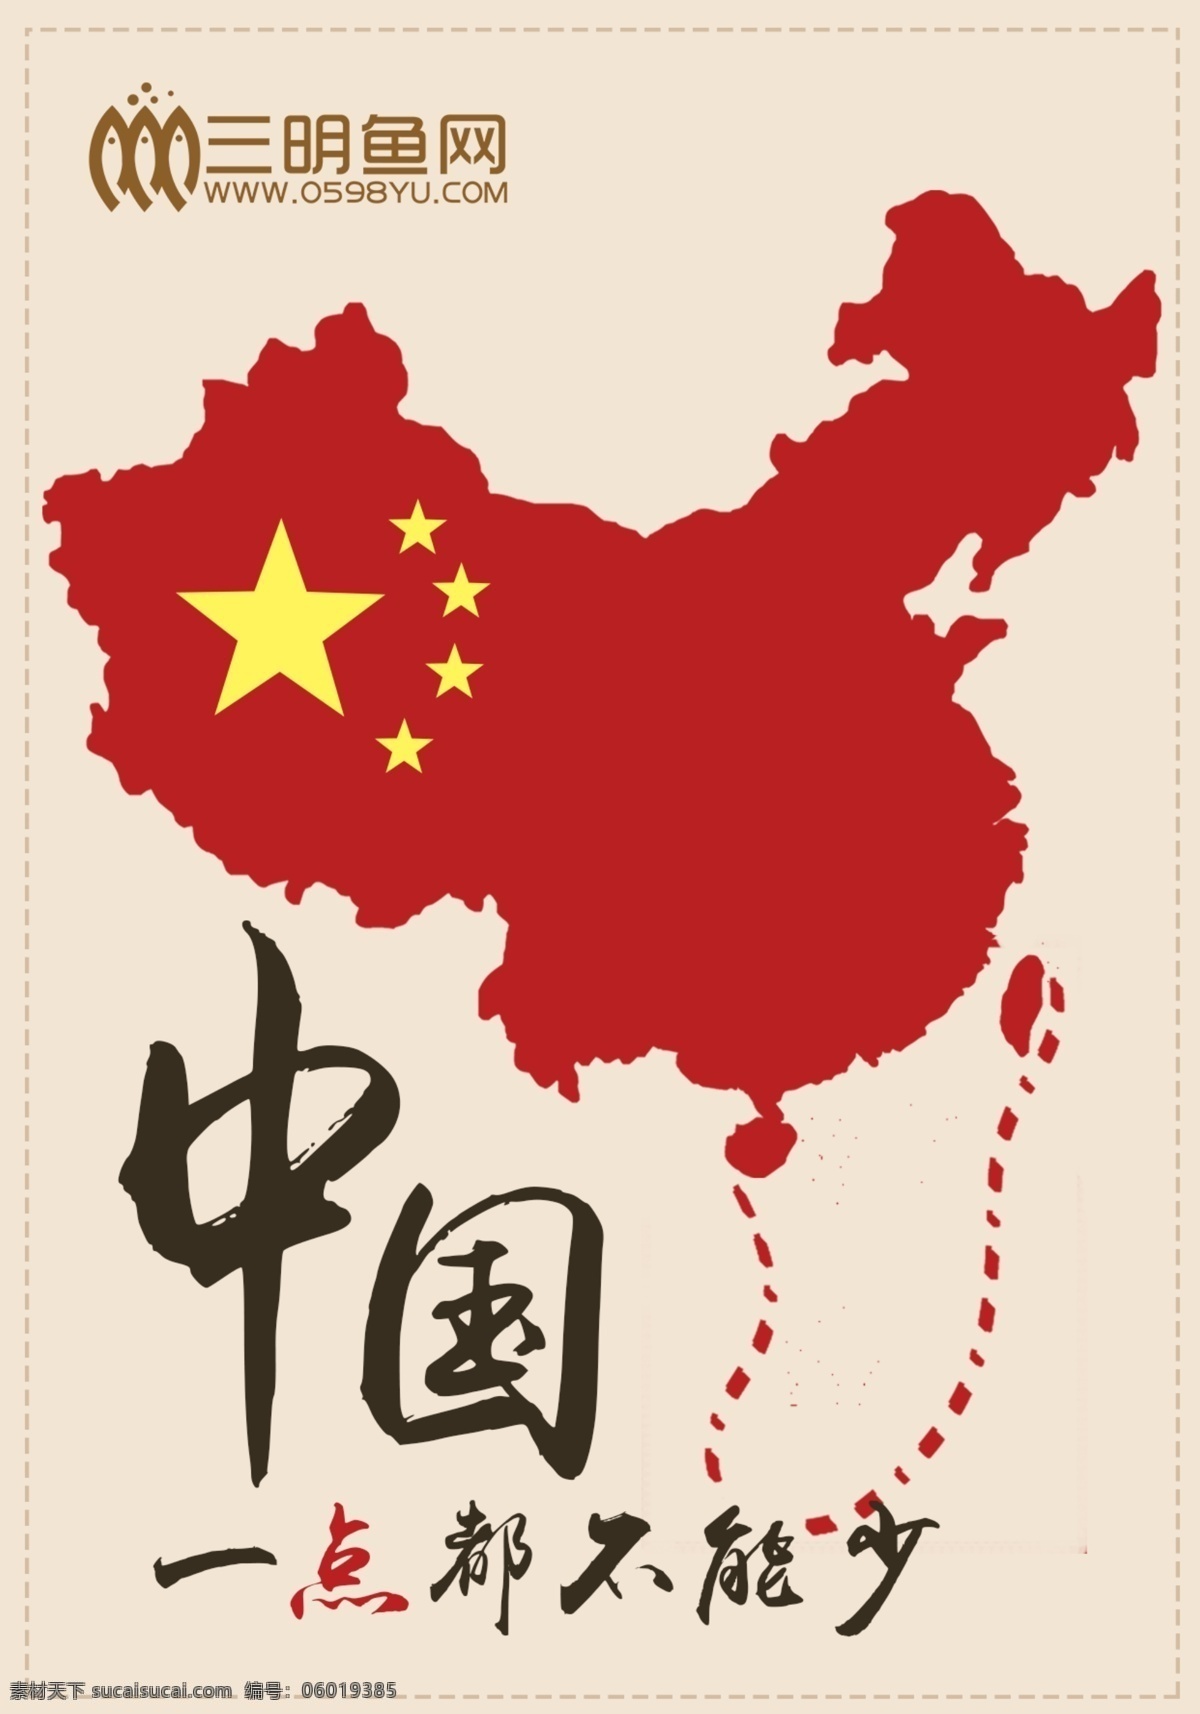 南海 诸 岛 app 开机画面 一点都不能少 中国 红色